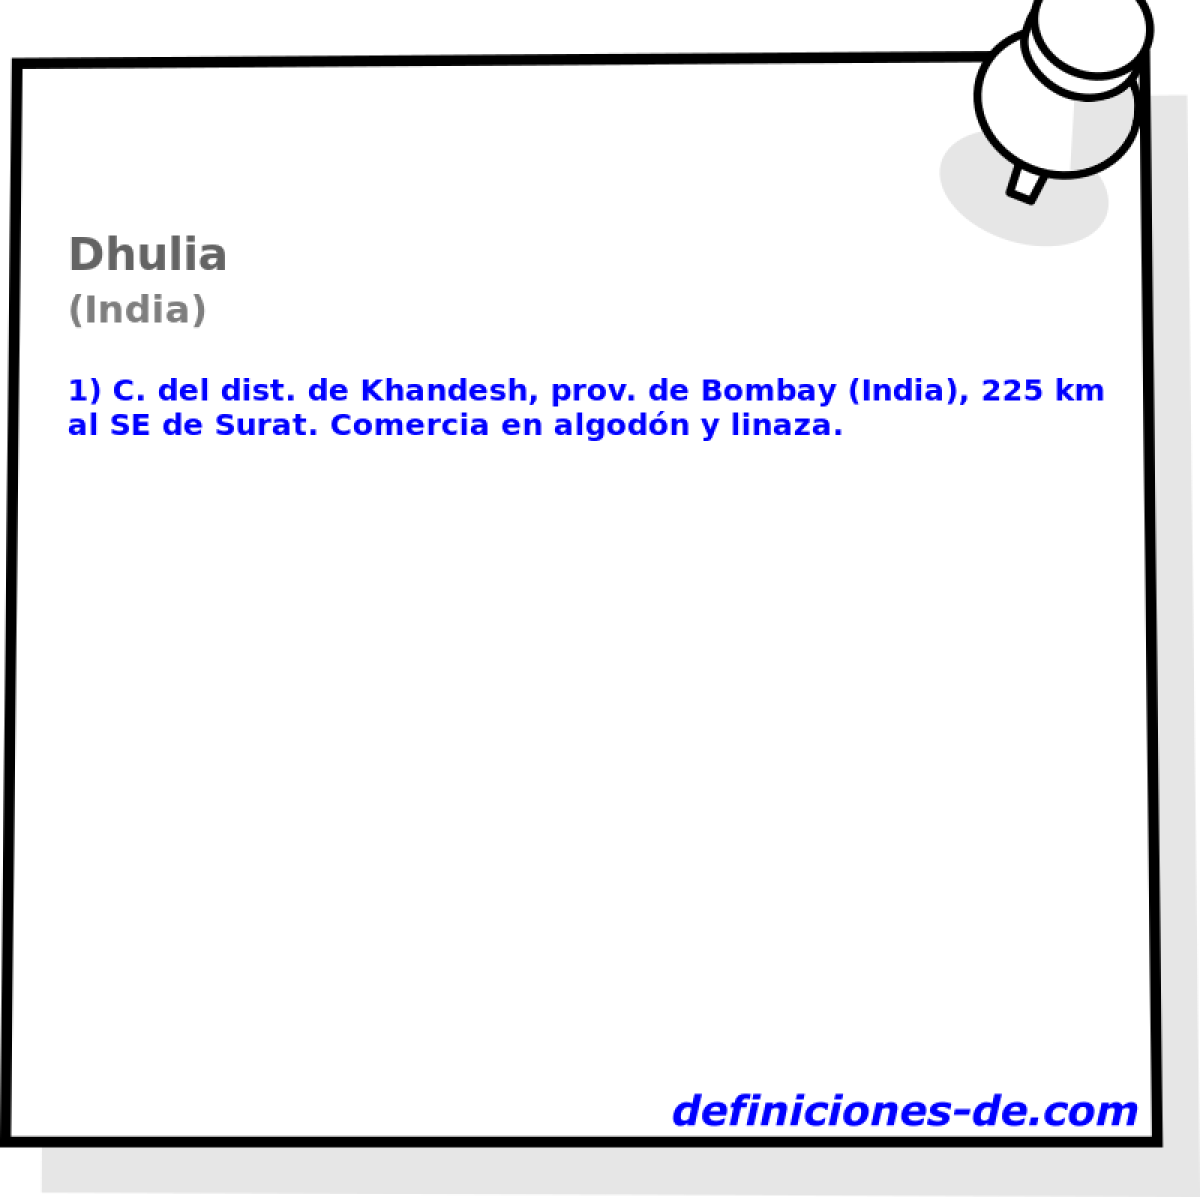 Dhulia (India)